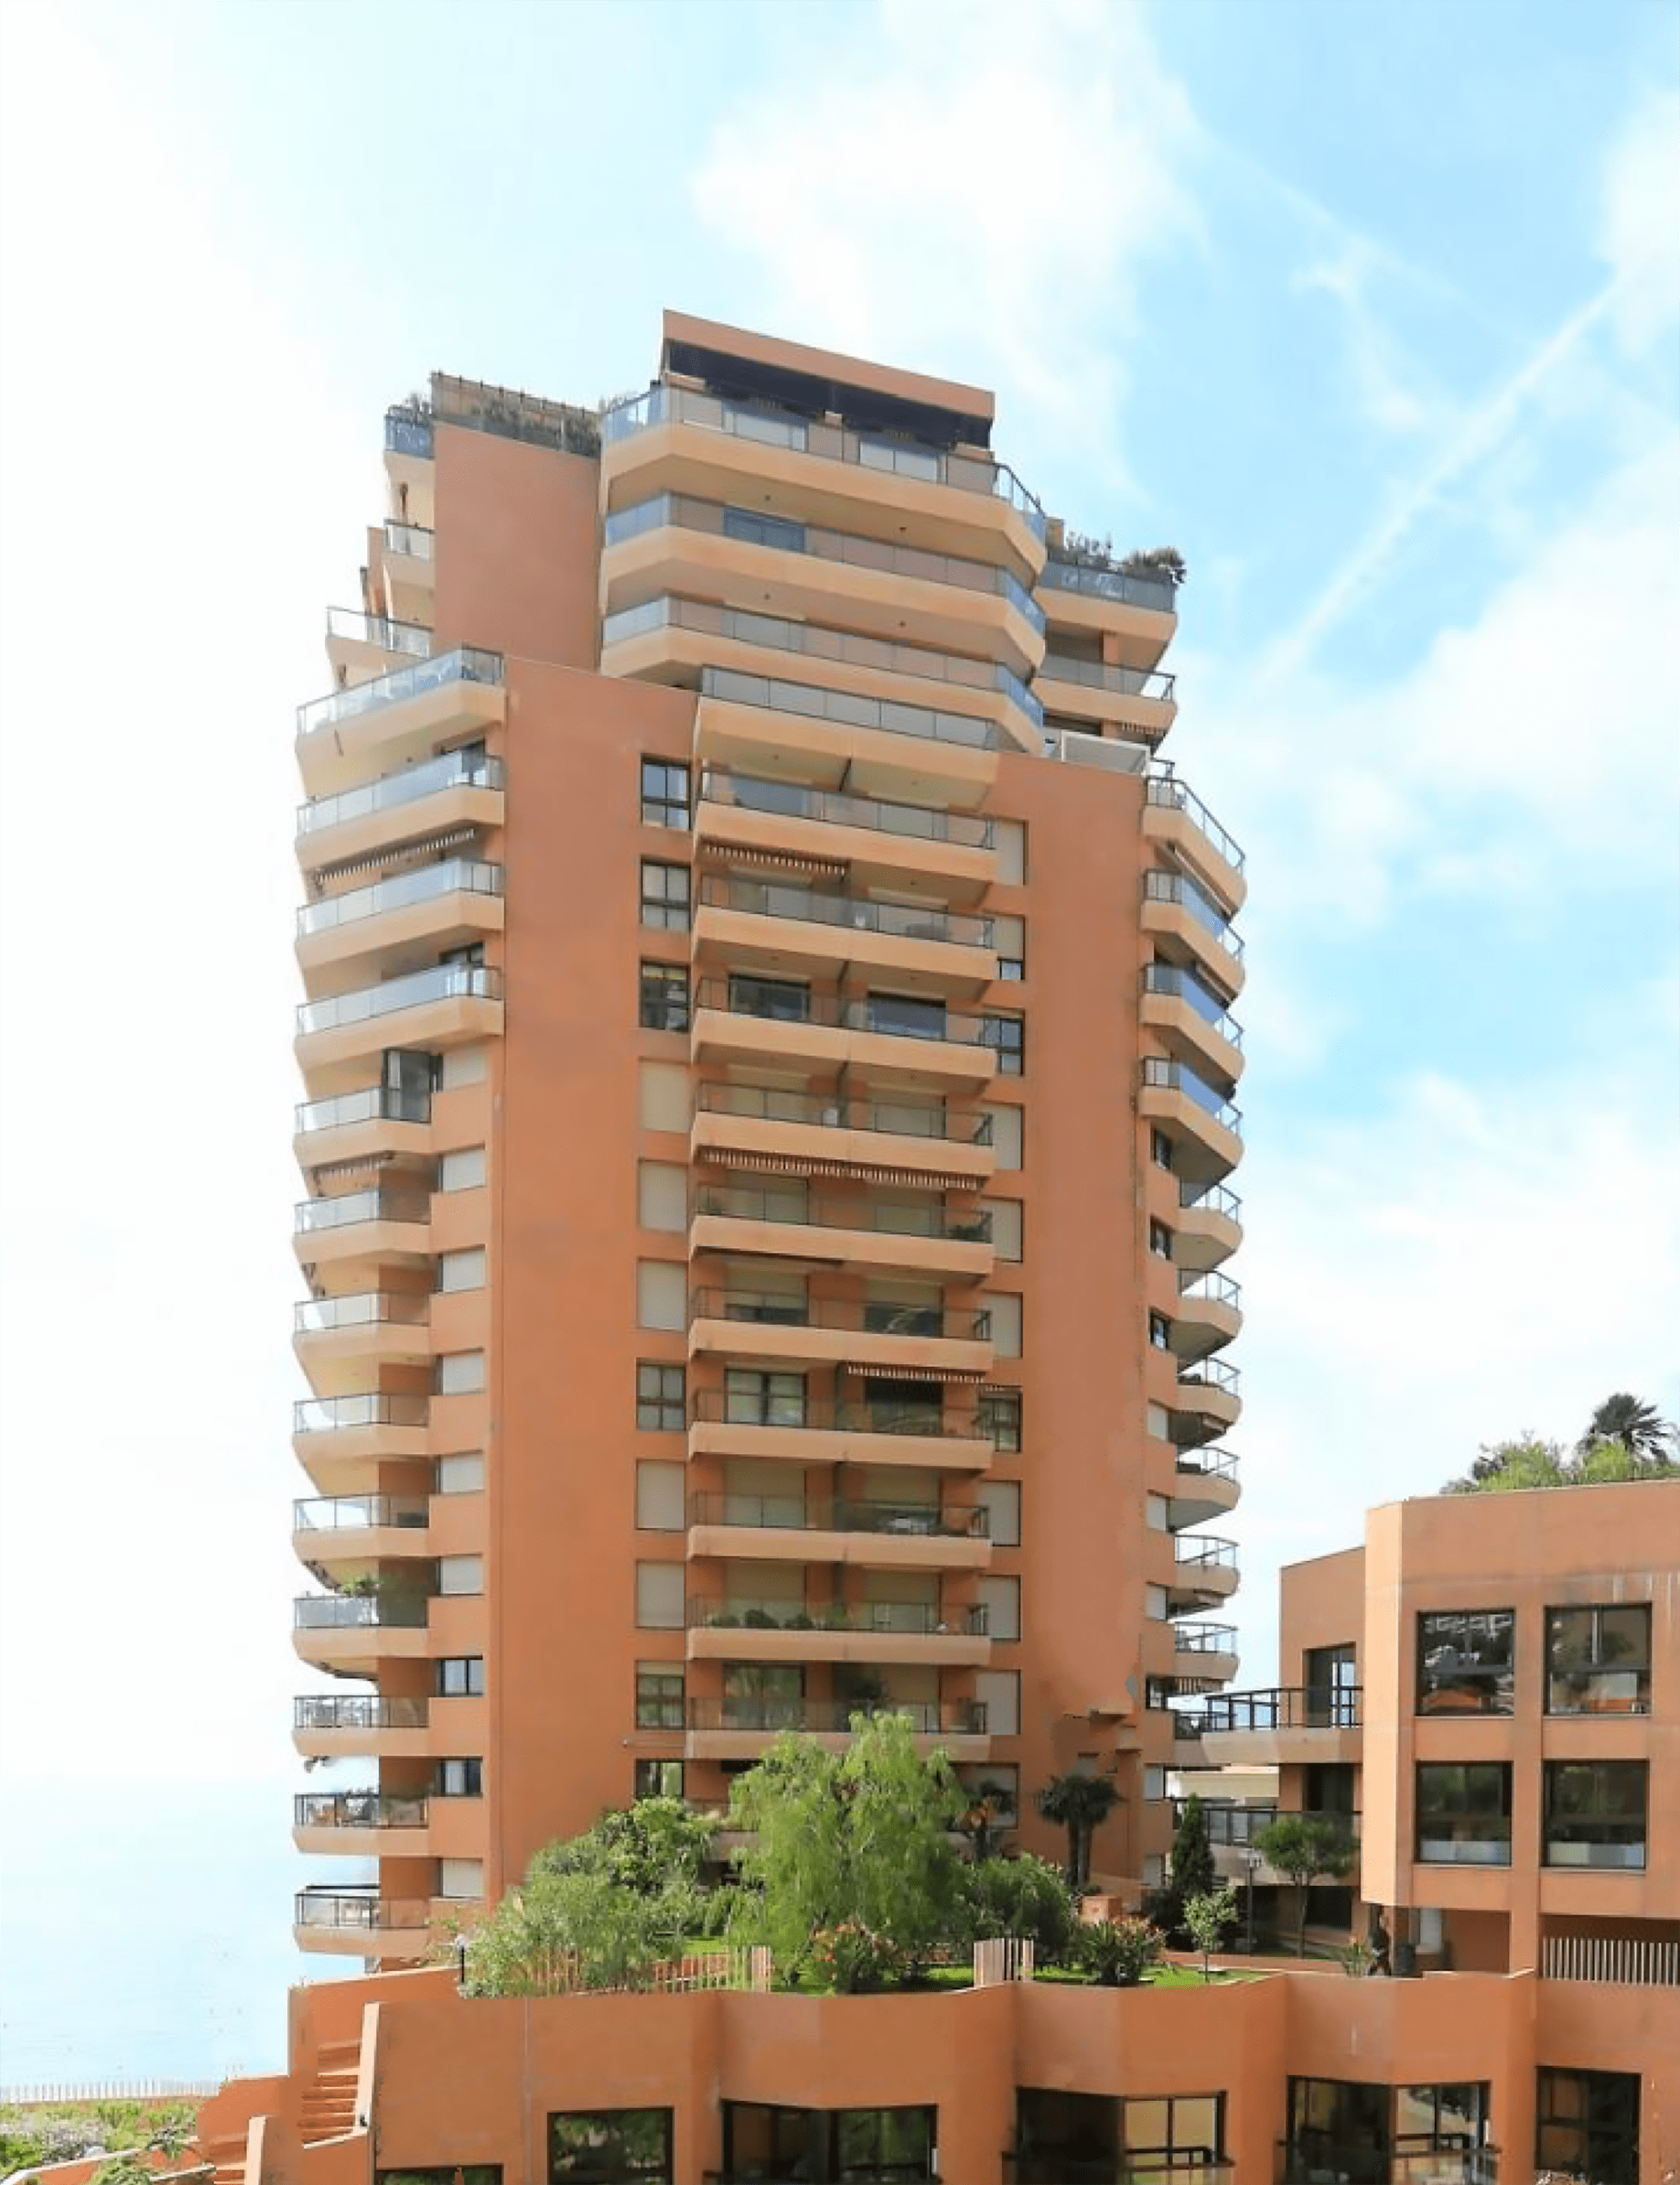                                                                             Immeuble Monte Carlo Sun                                                                        